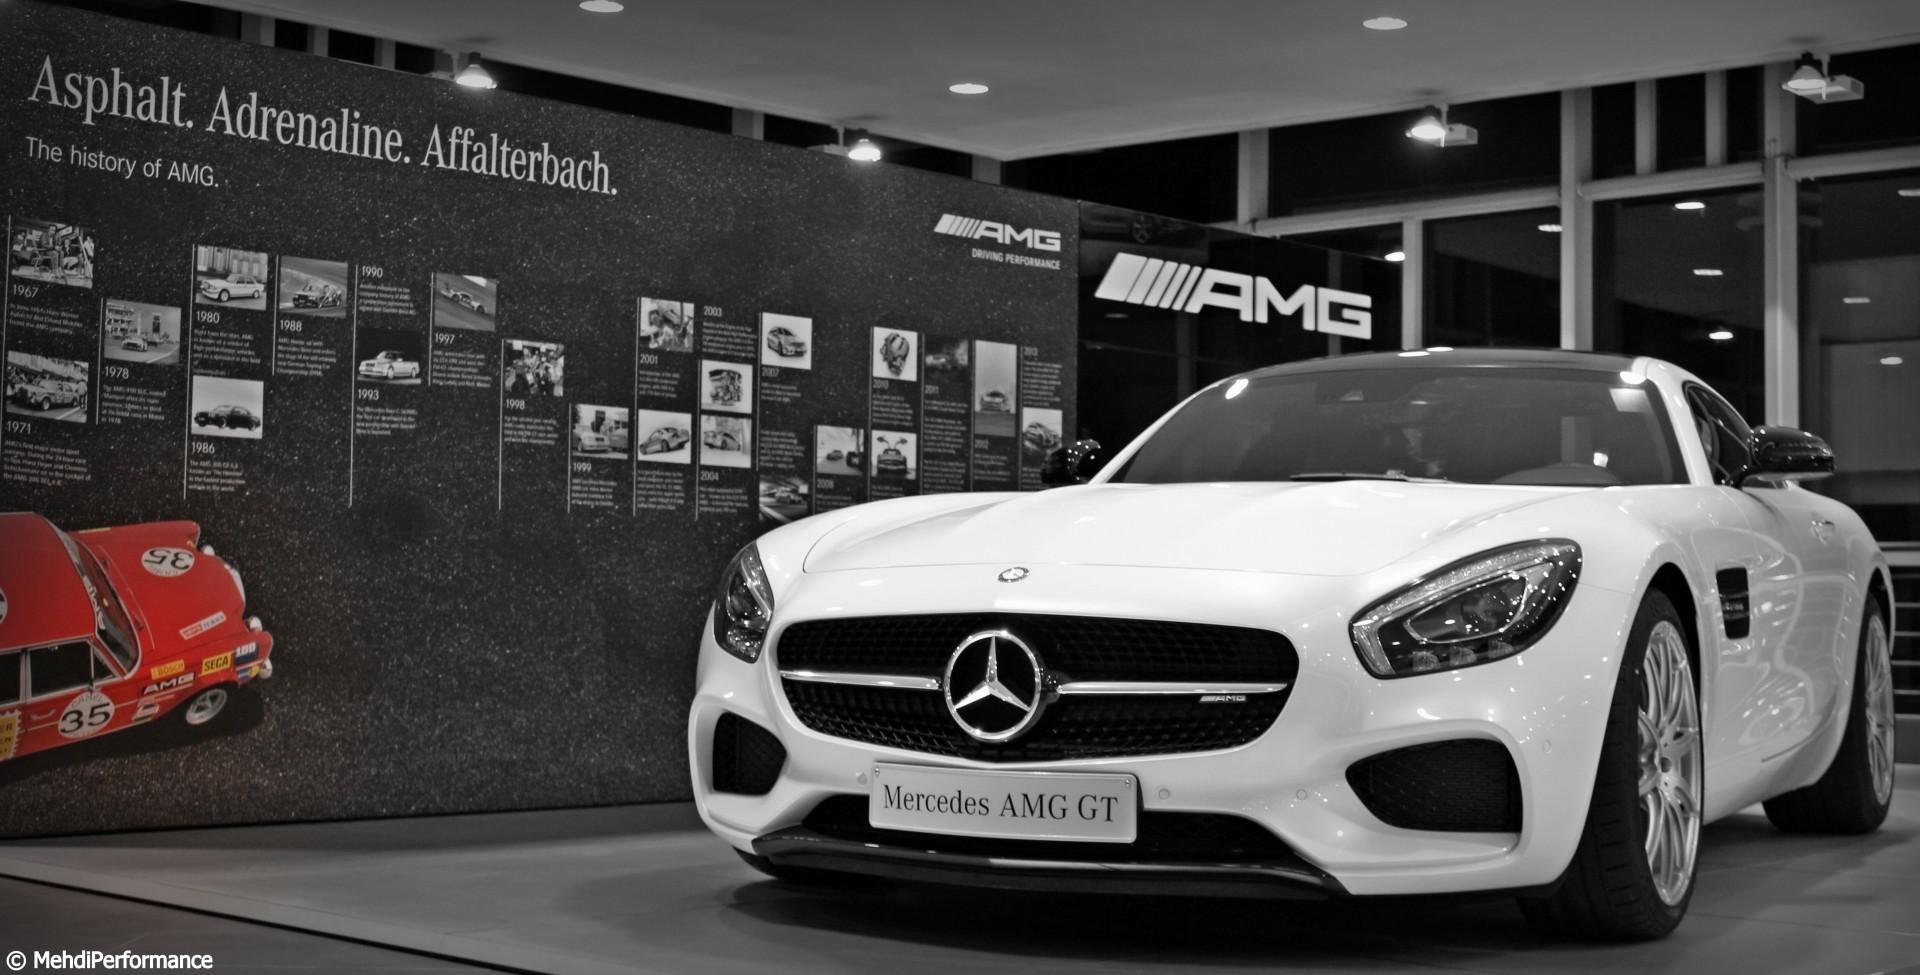 Sportautomoto en visite chez le concessionnaire Mercedes-AMG Maroc